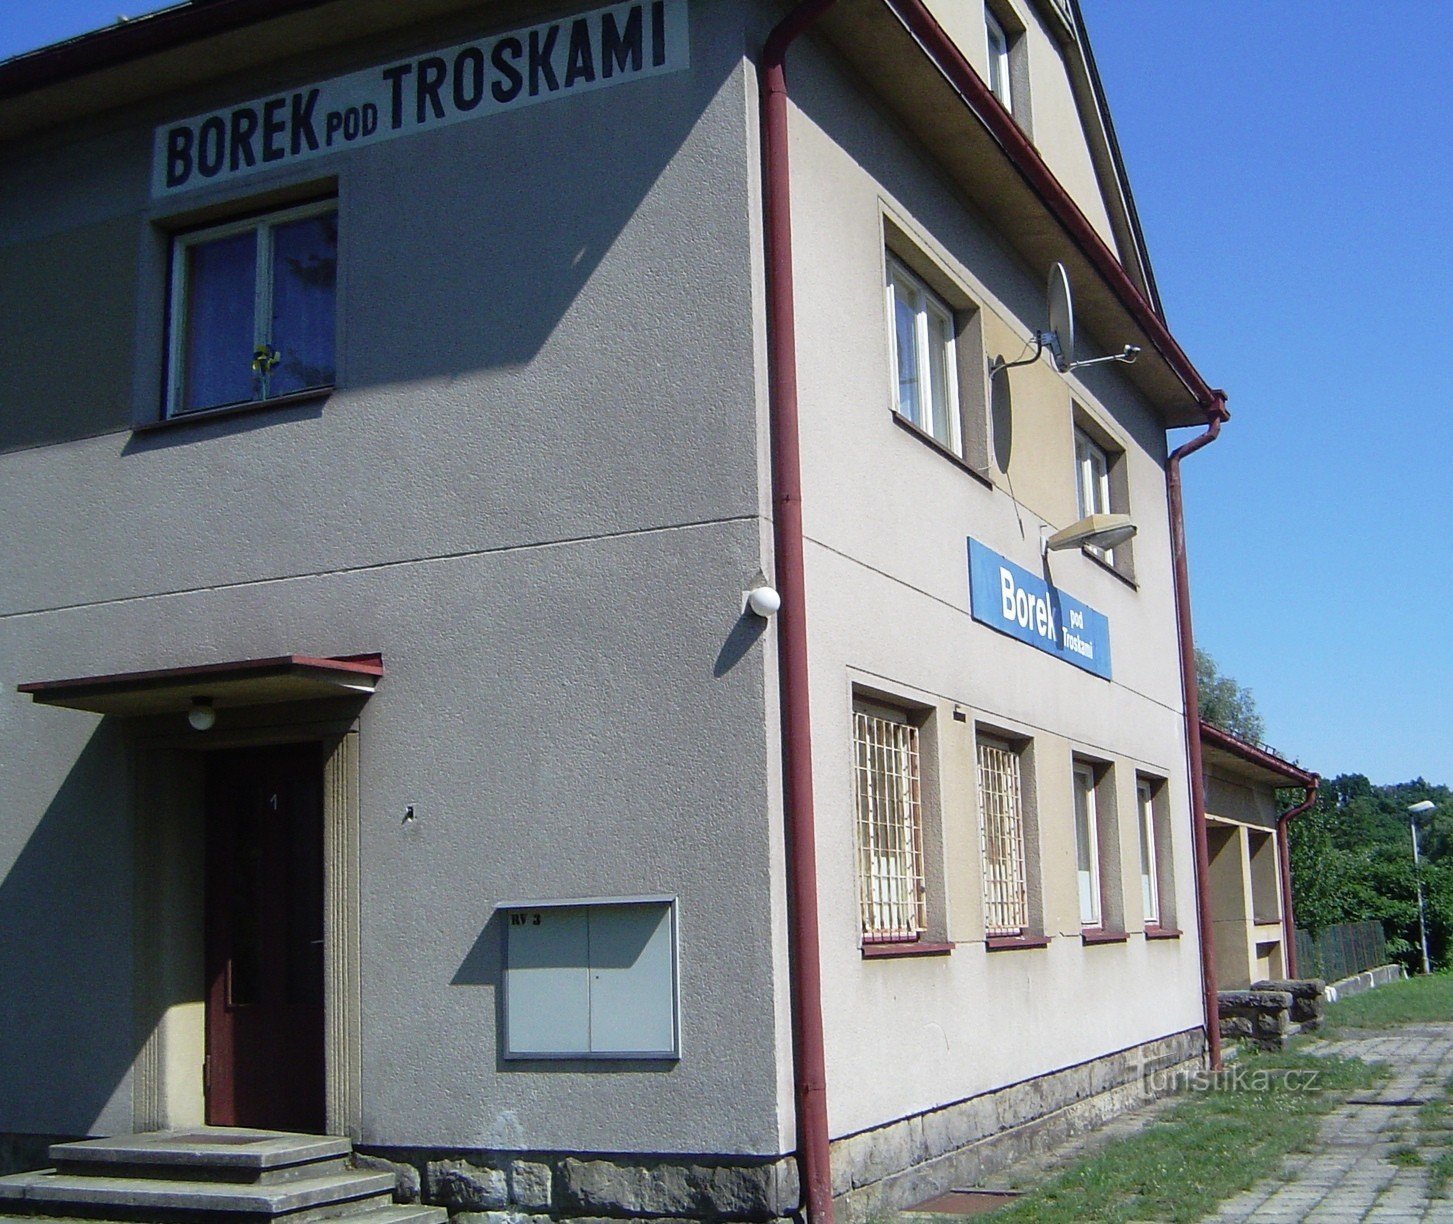 Borek pod Troskami - xin lỗi. trạm